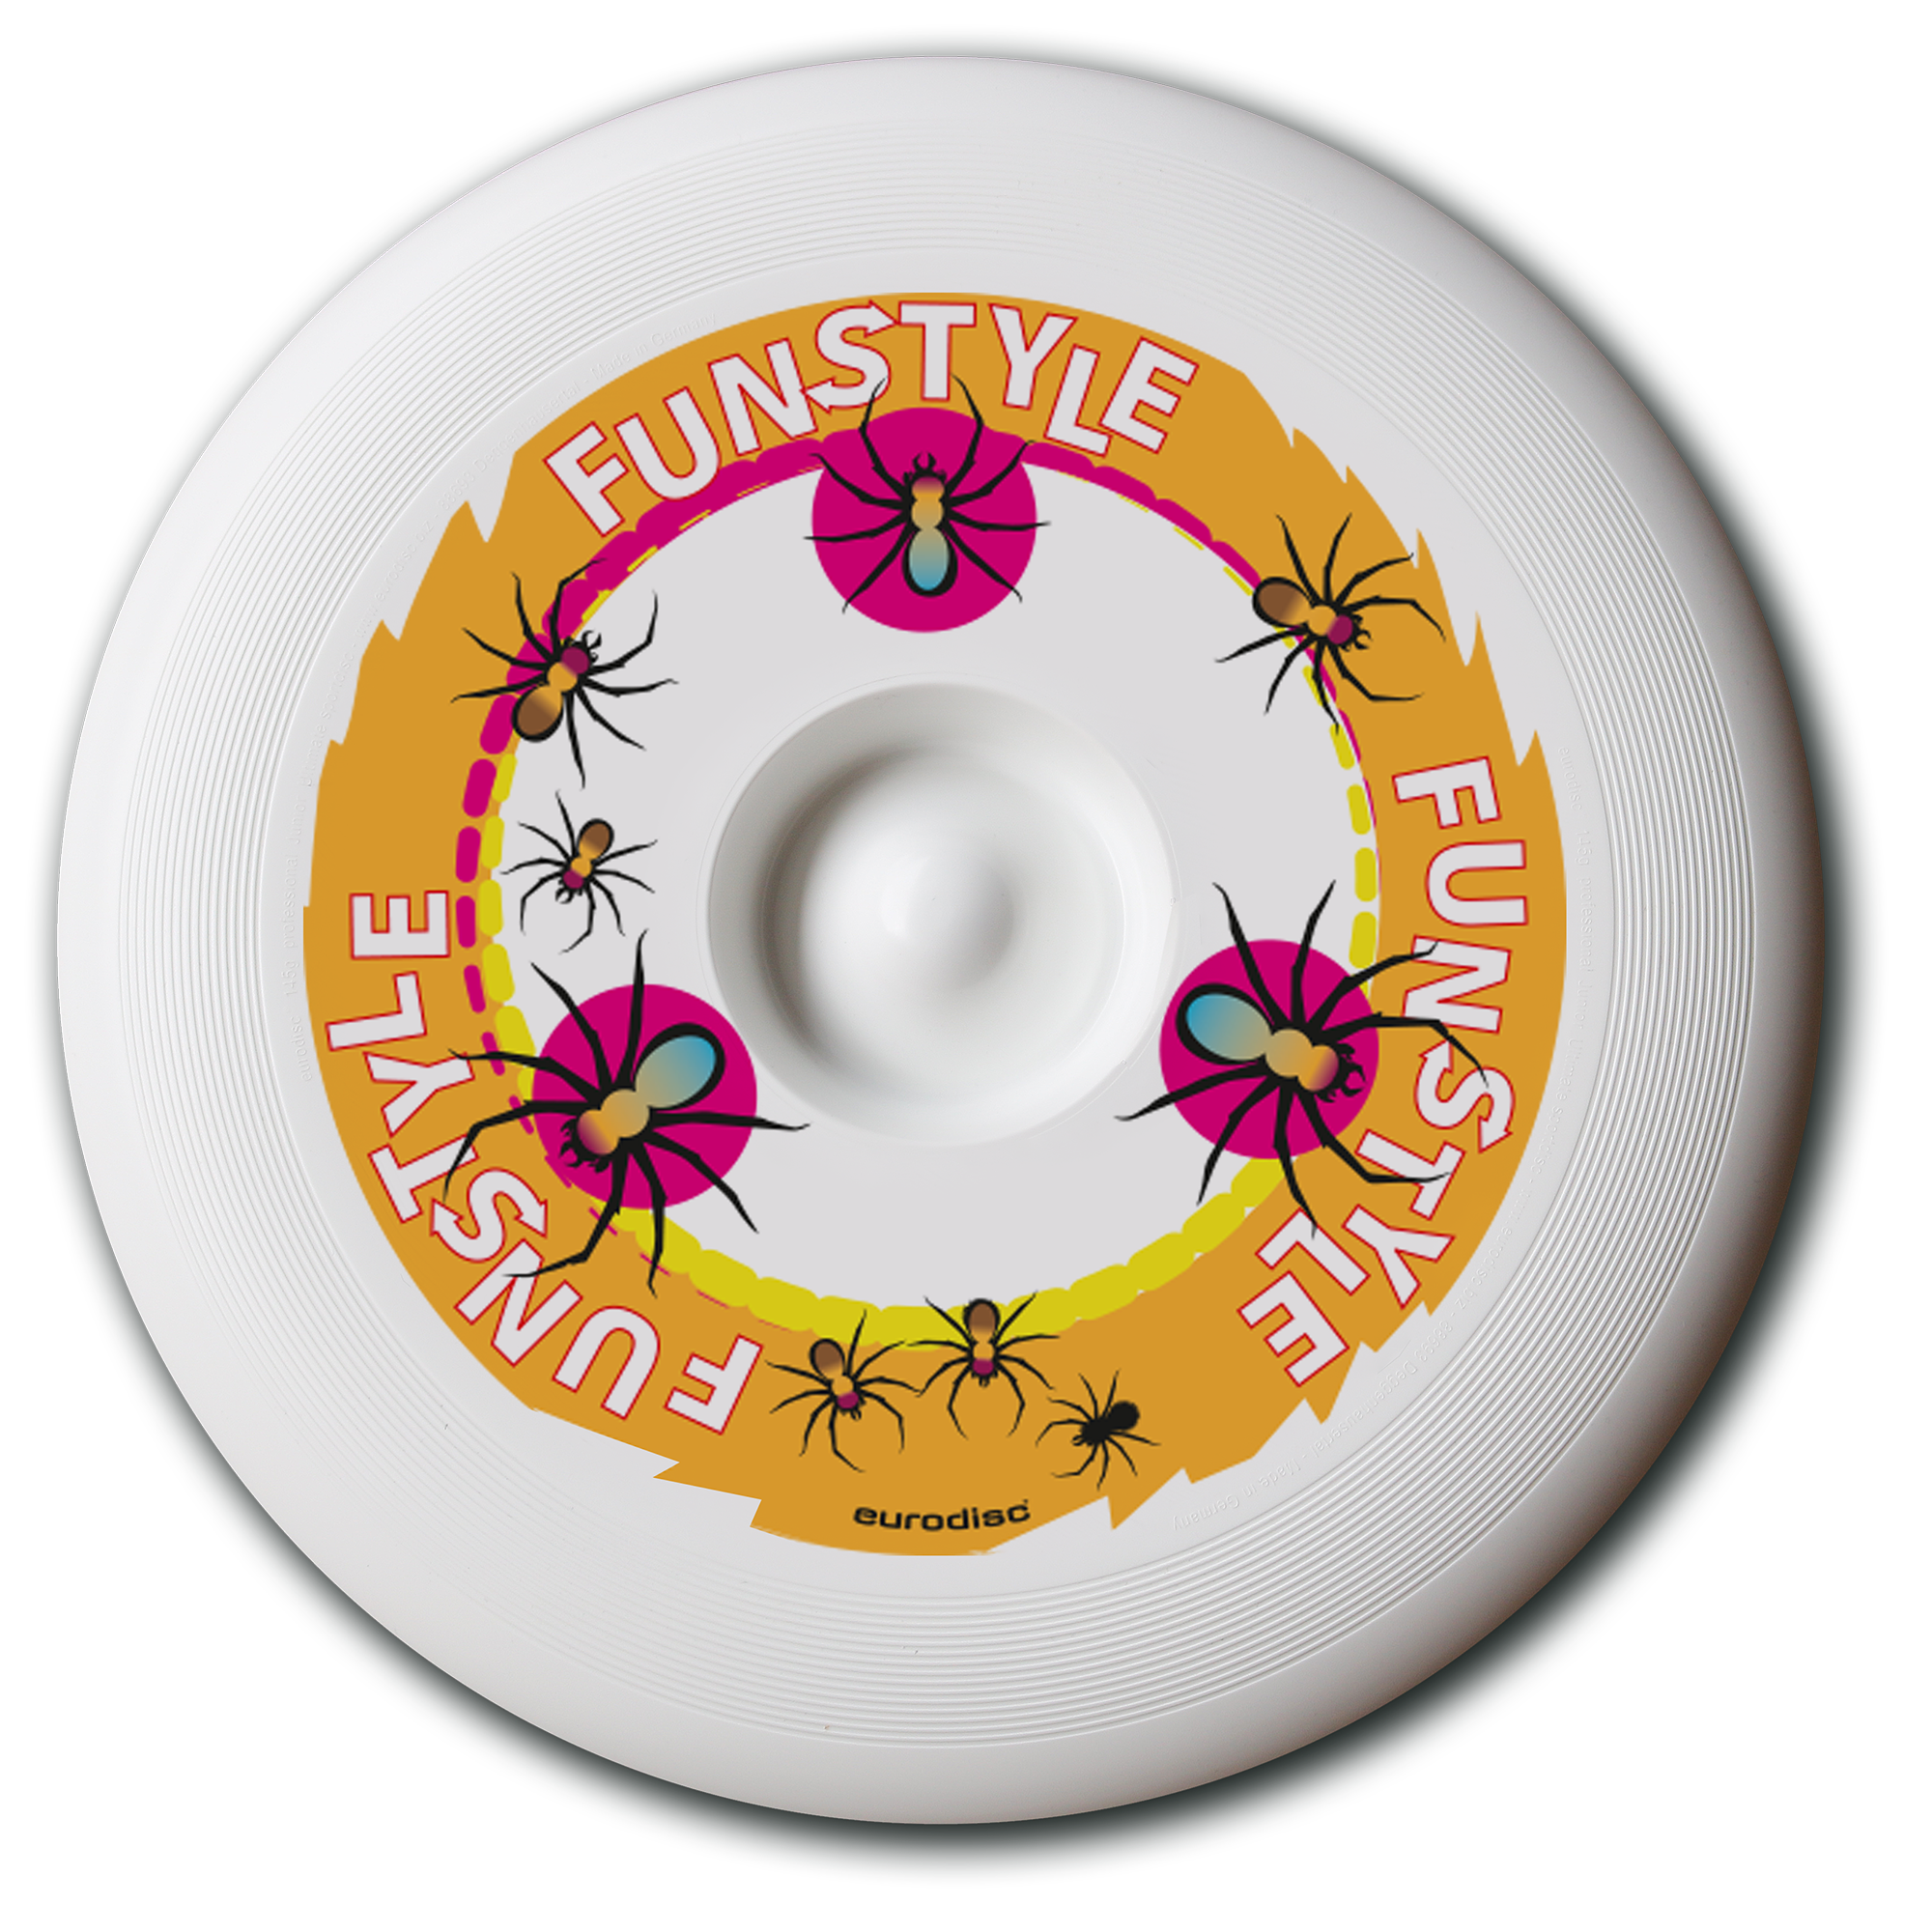 eurodisc 145 g Junior WEISS Funstyle SPIDER